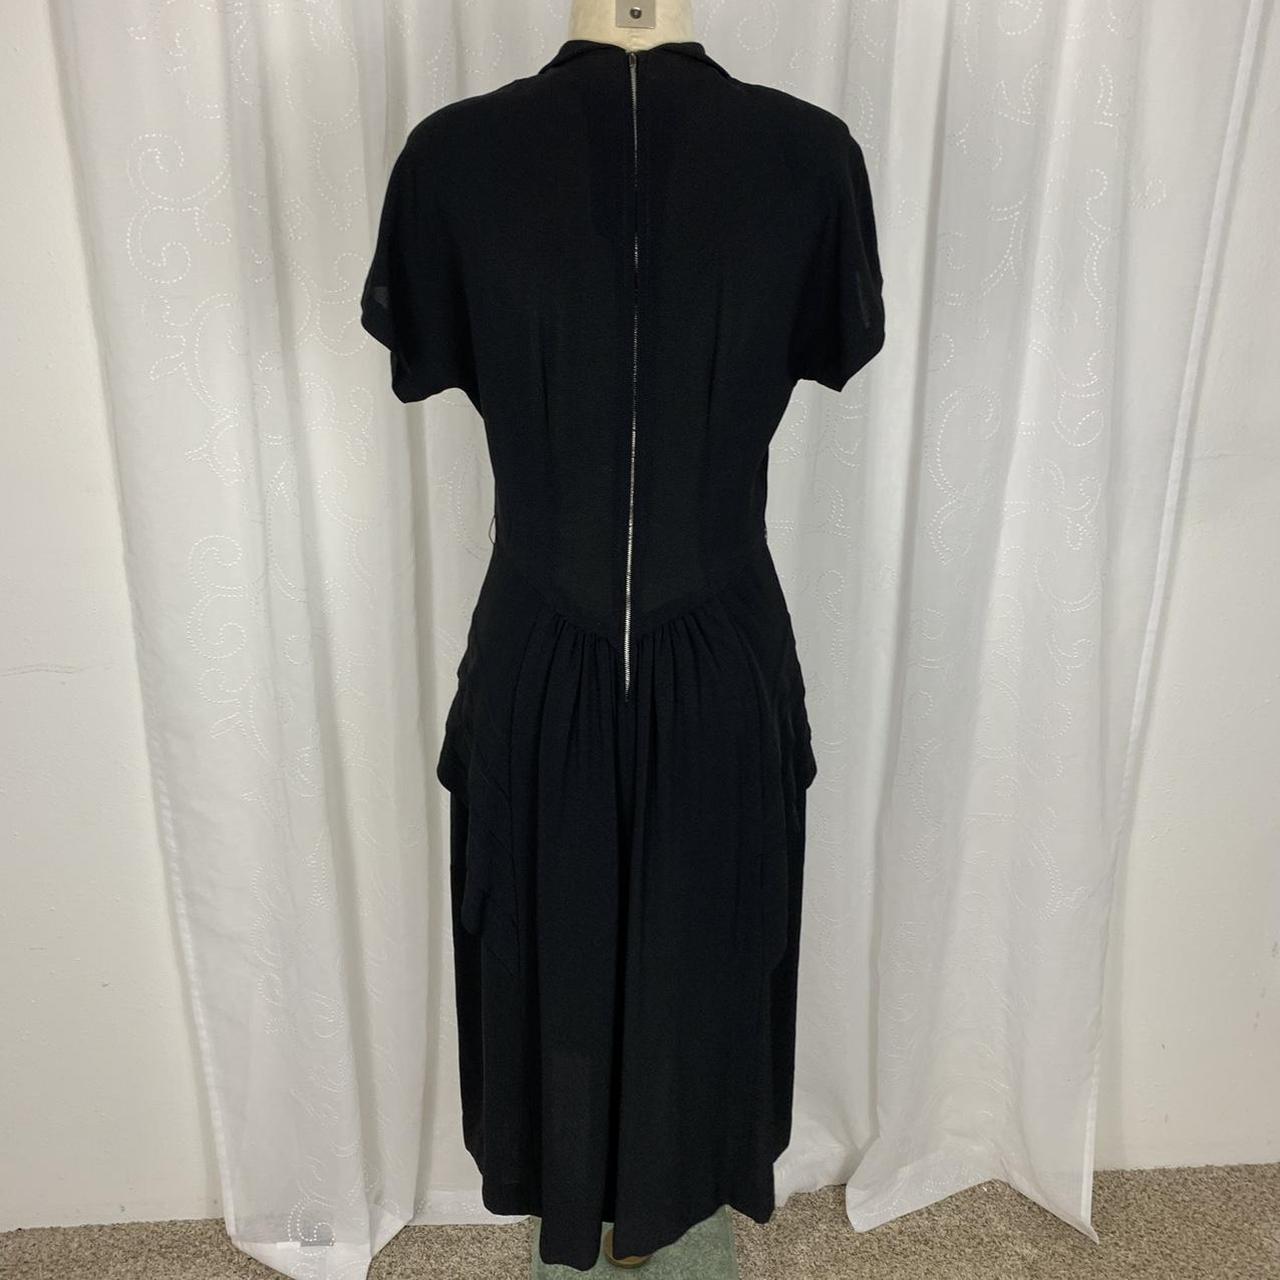 Vintage 1940’s beaded collar black dress No size or... - Depop